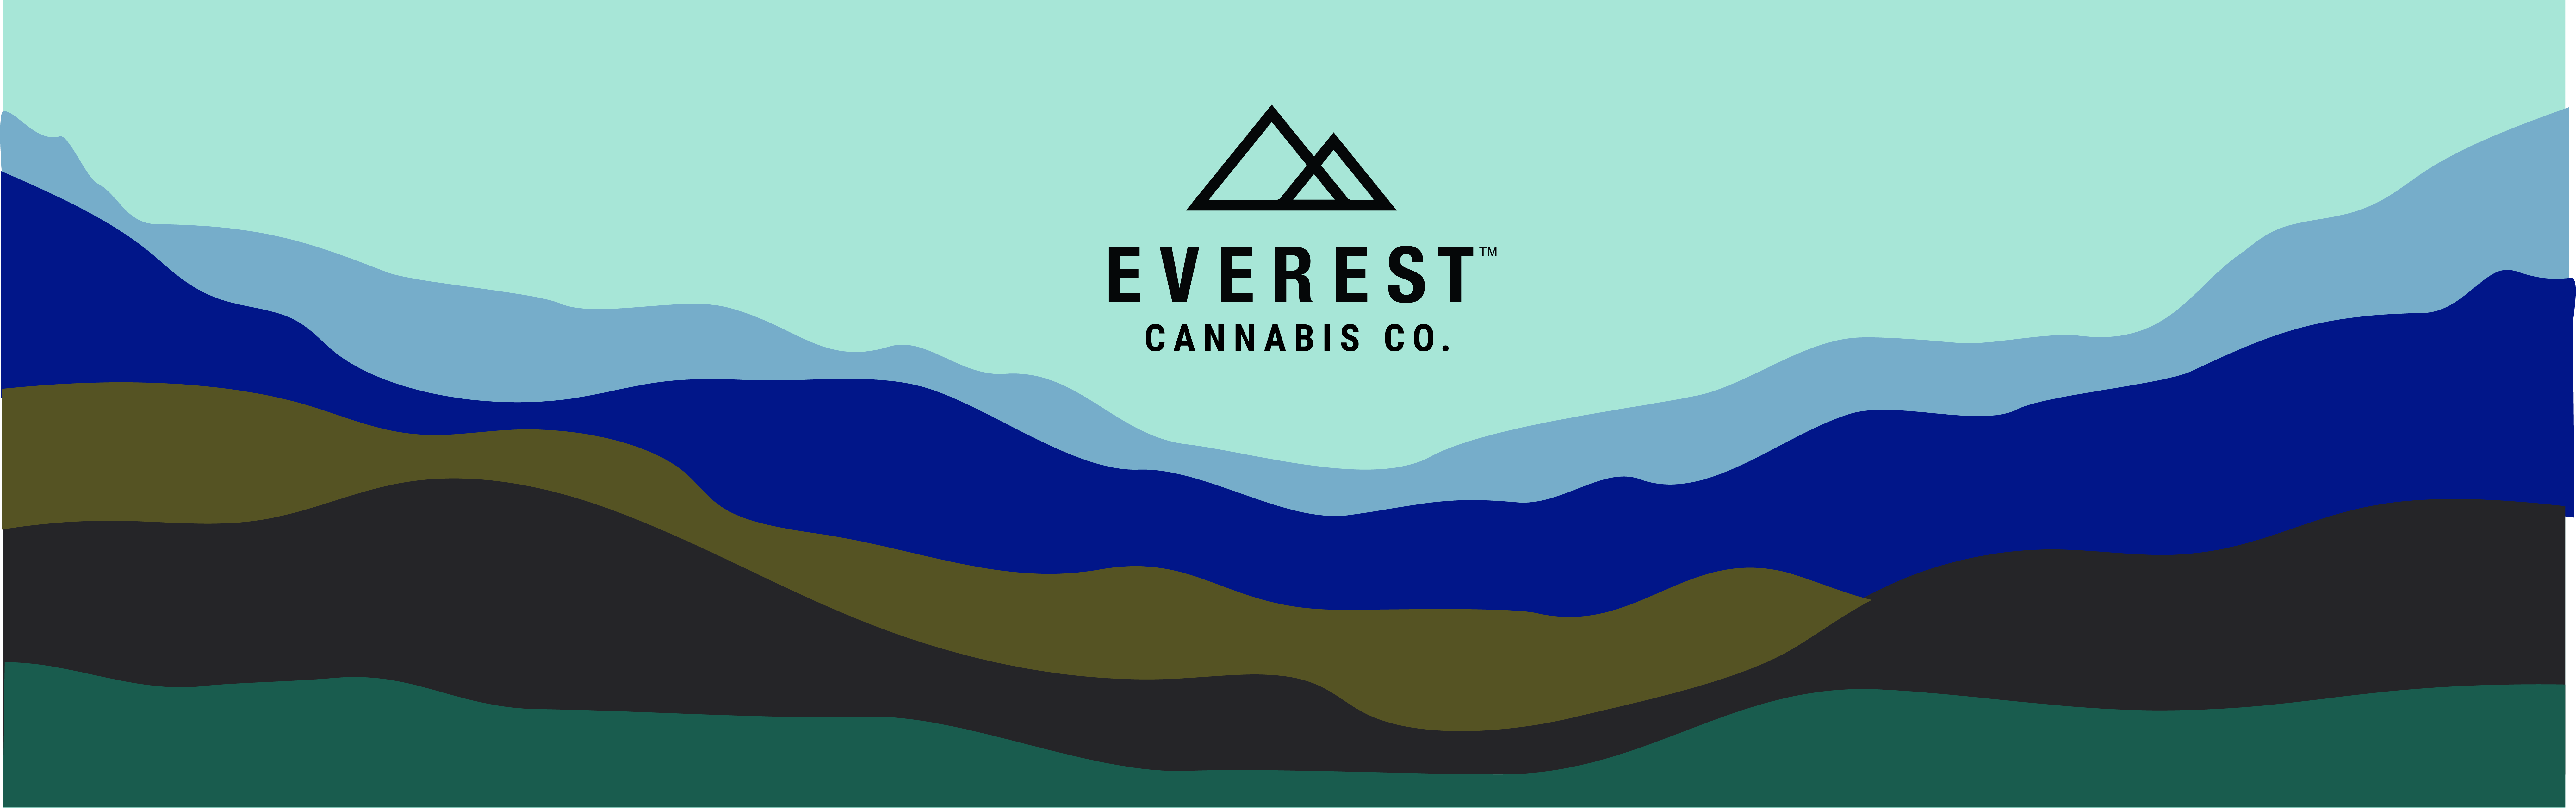 Everest Cannabis Co. - Texico